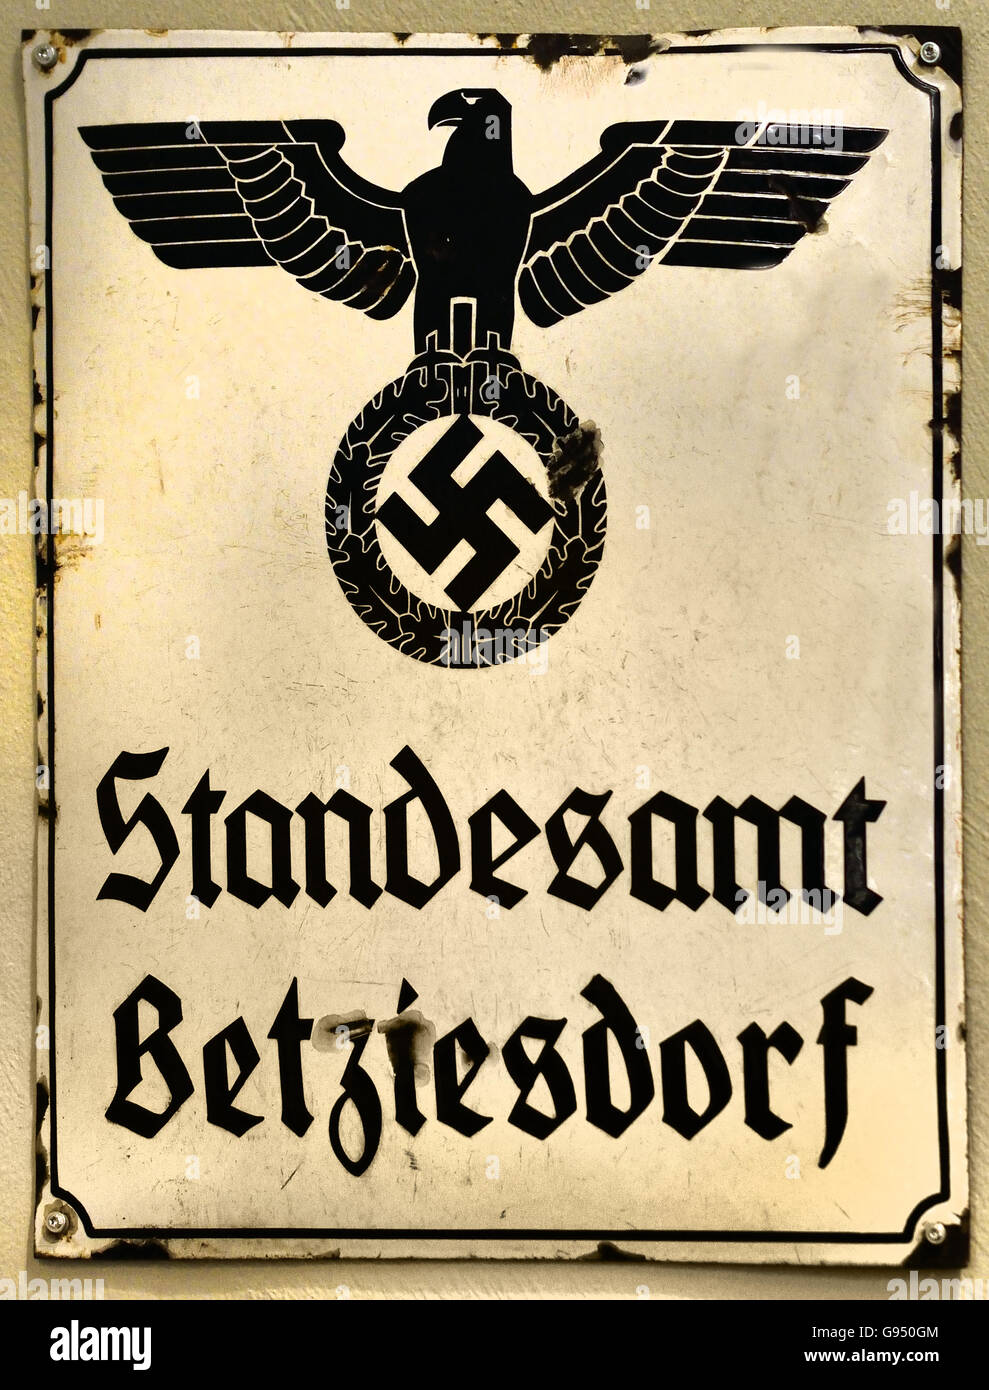 Standesamt Betzdorf - Oficina de Registro Betzdorf señal Berlín Alemania Nazi de la esvástica Foto de stock